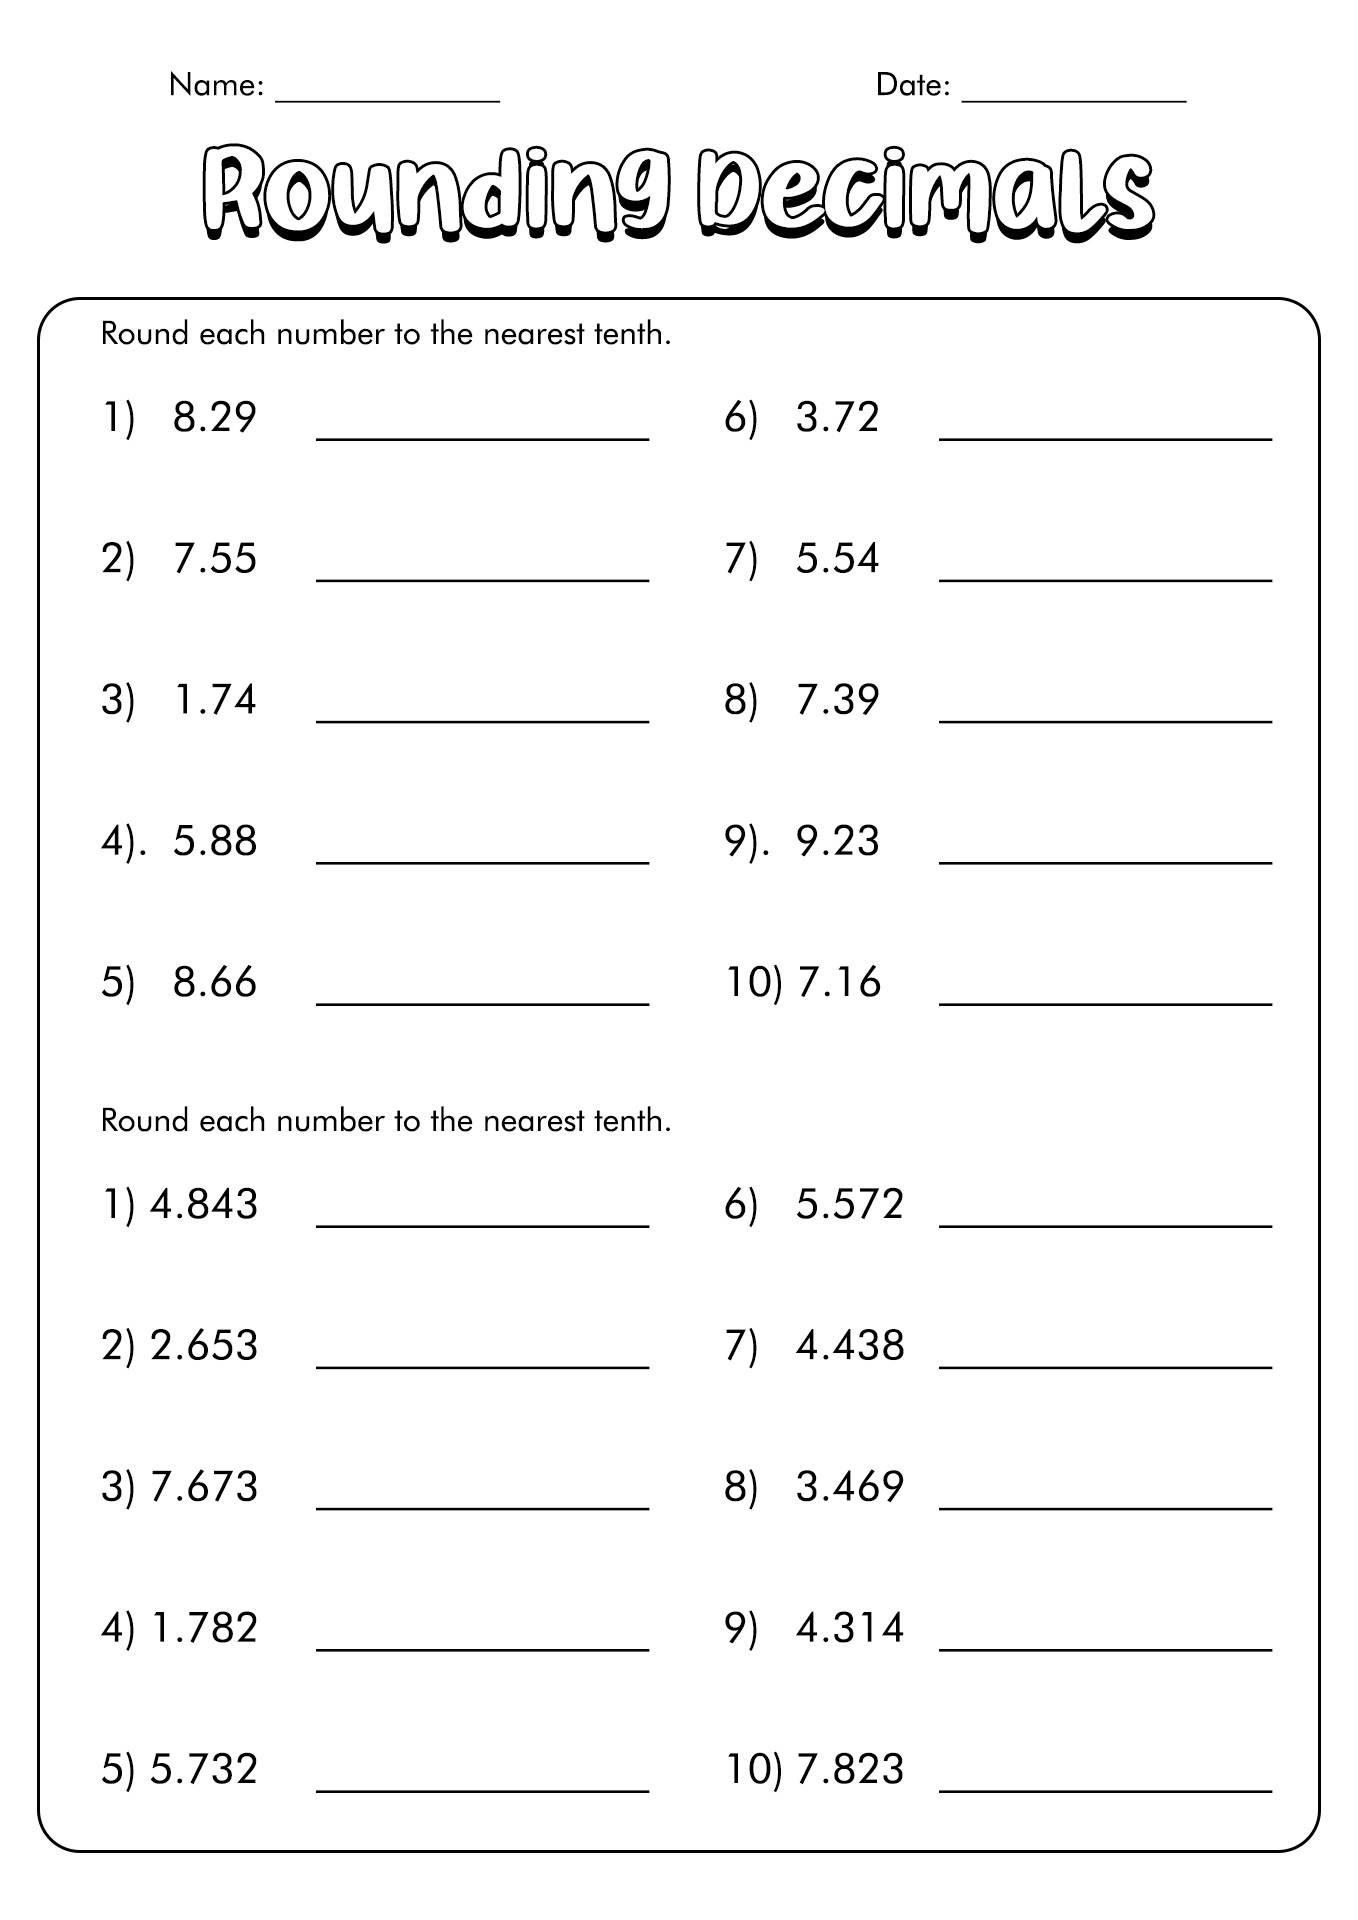 rounding-decimal-numbers-worksheet